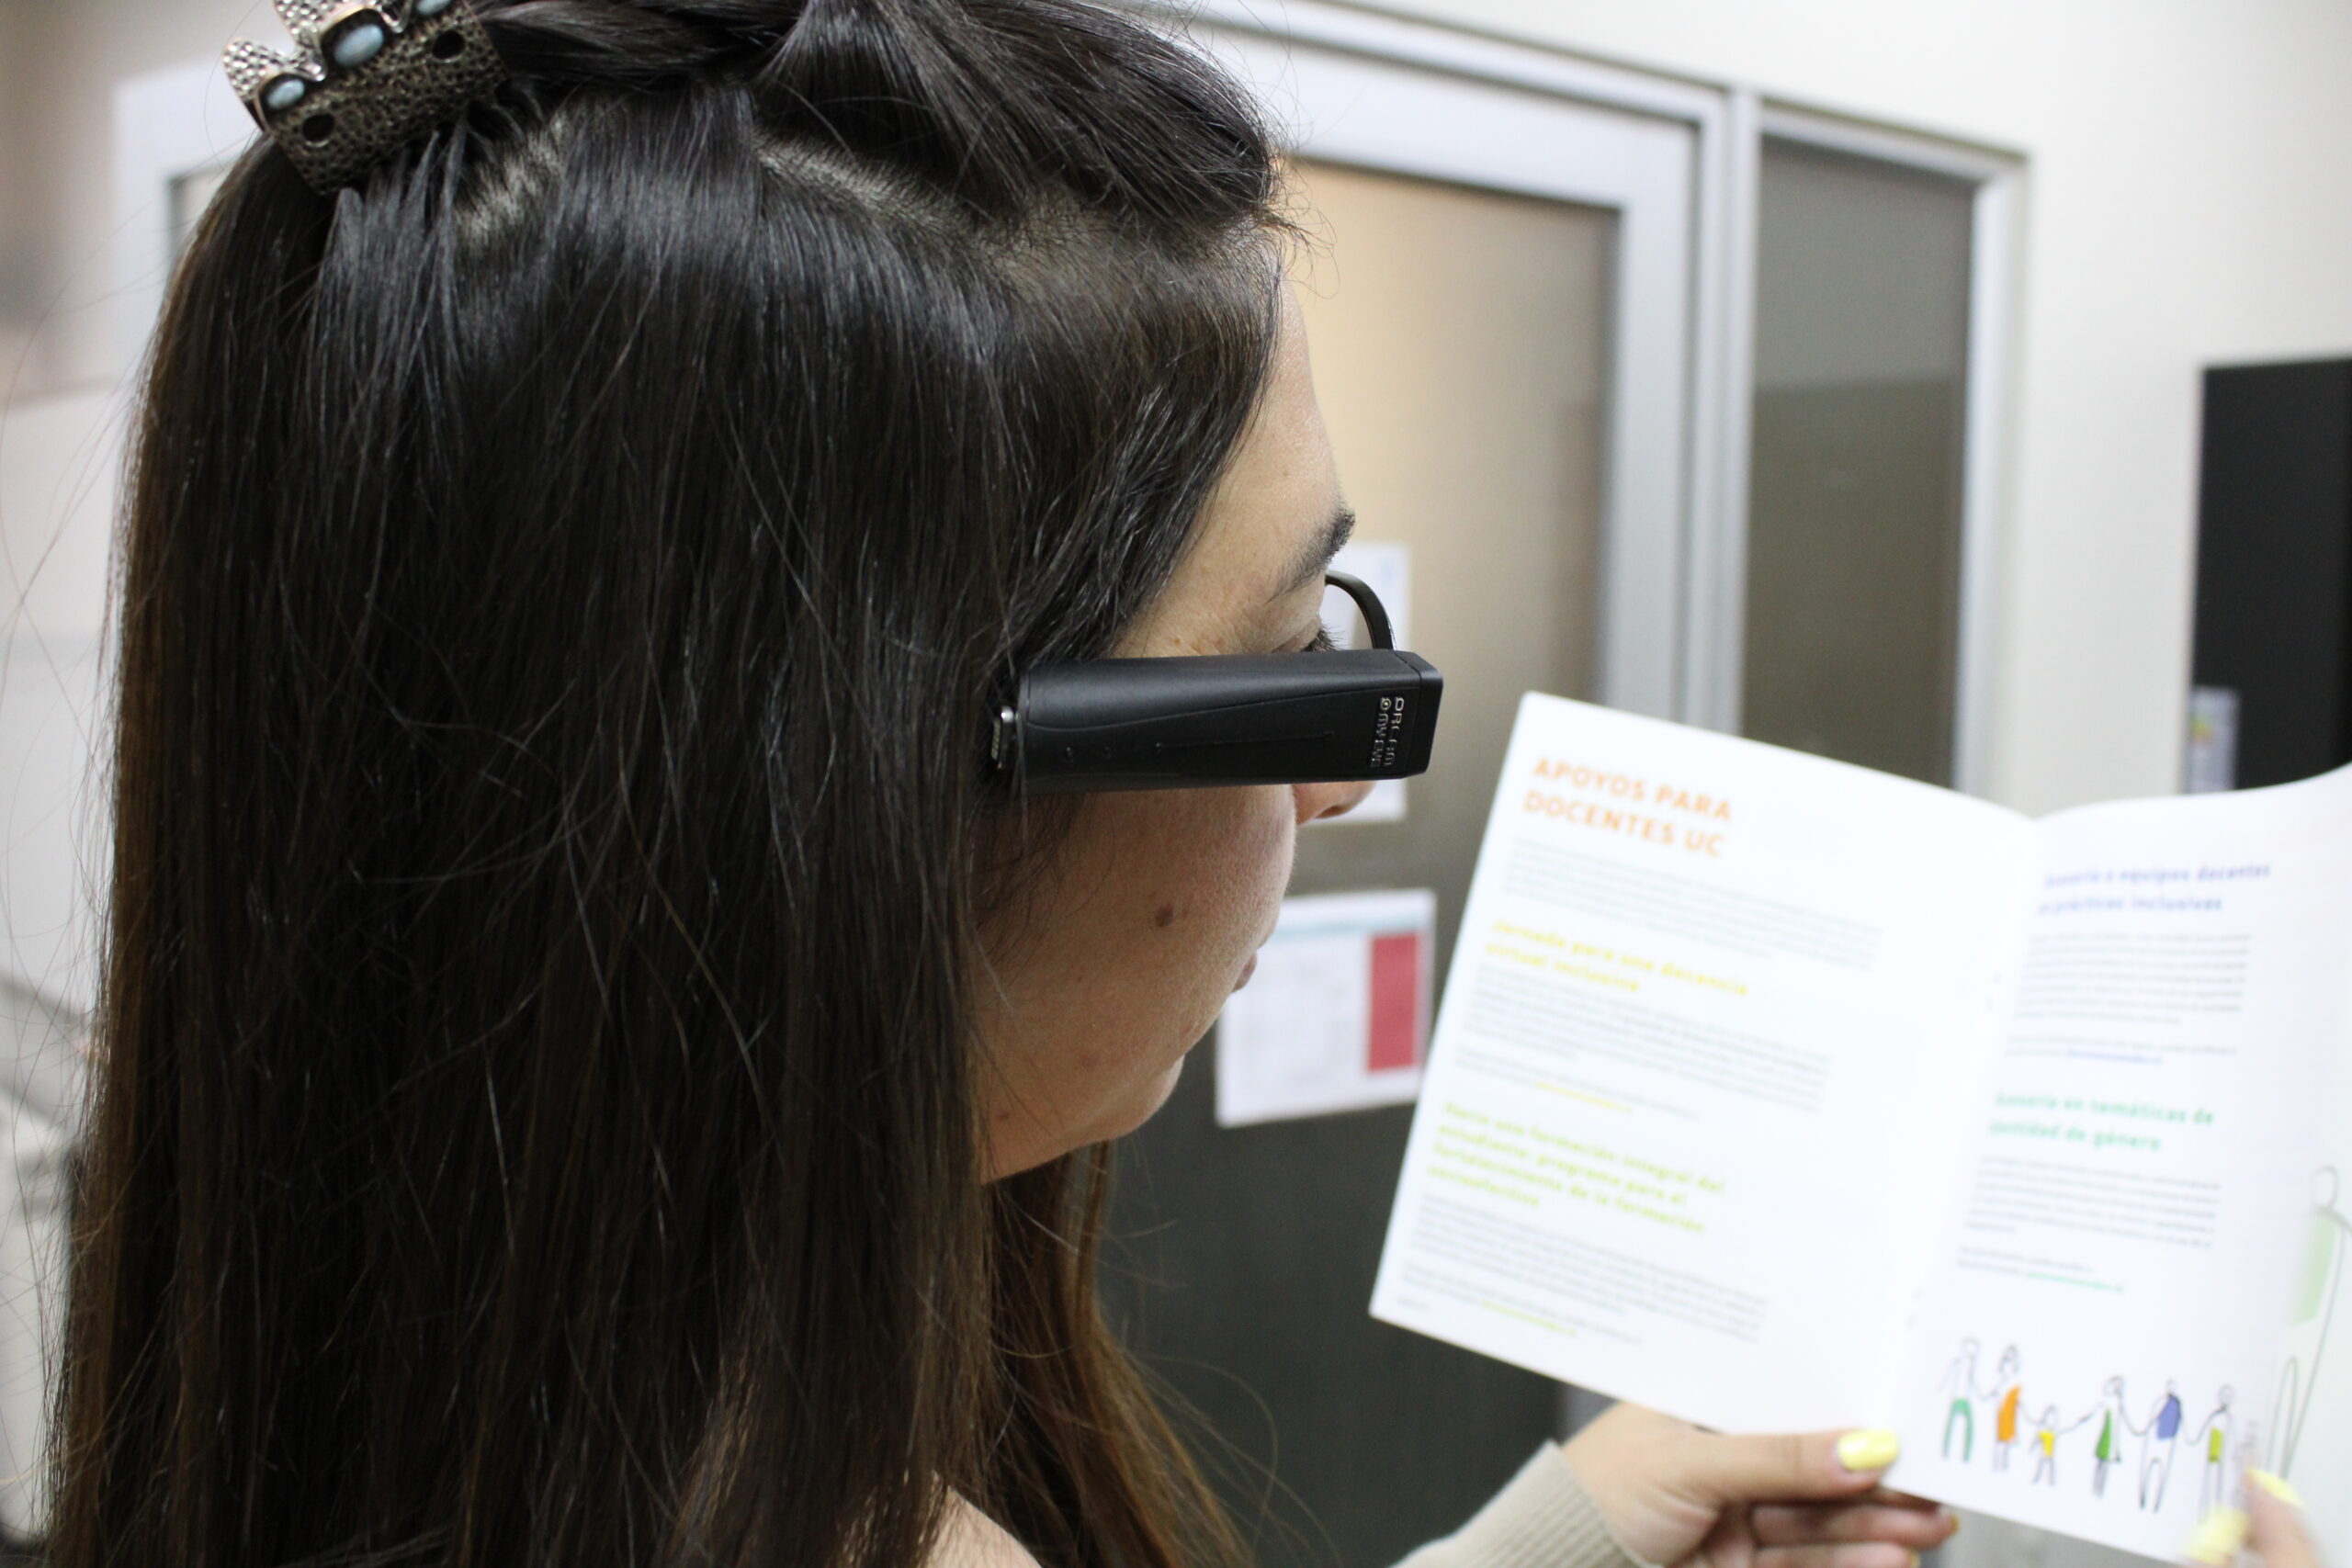 Persona utilizando el dispositivo Orcam para leer documento.